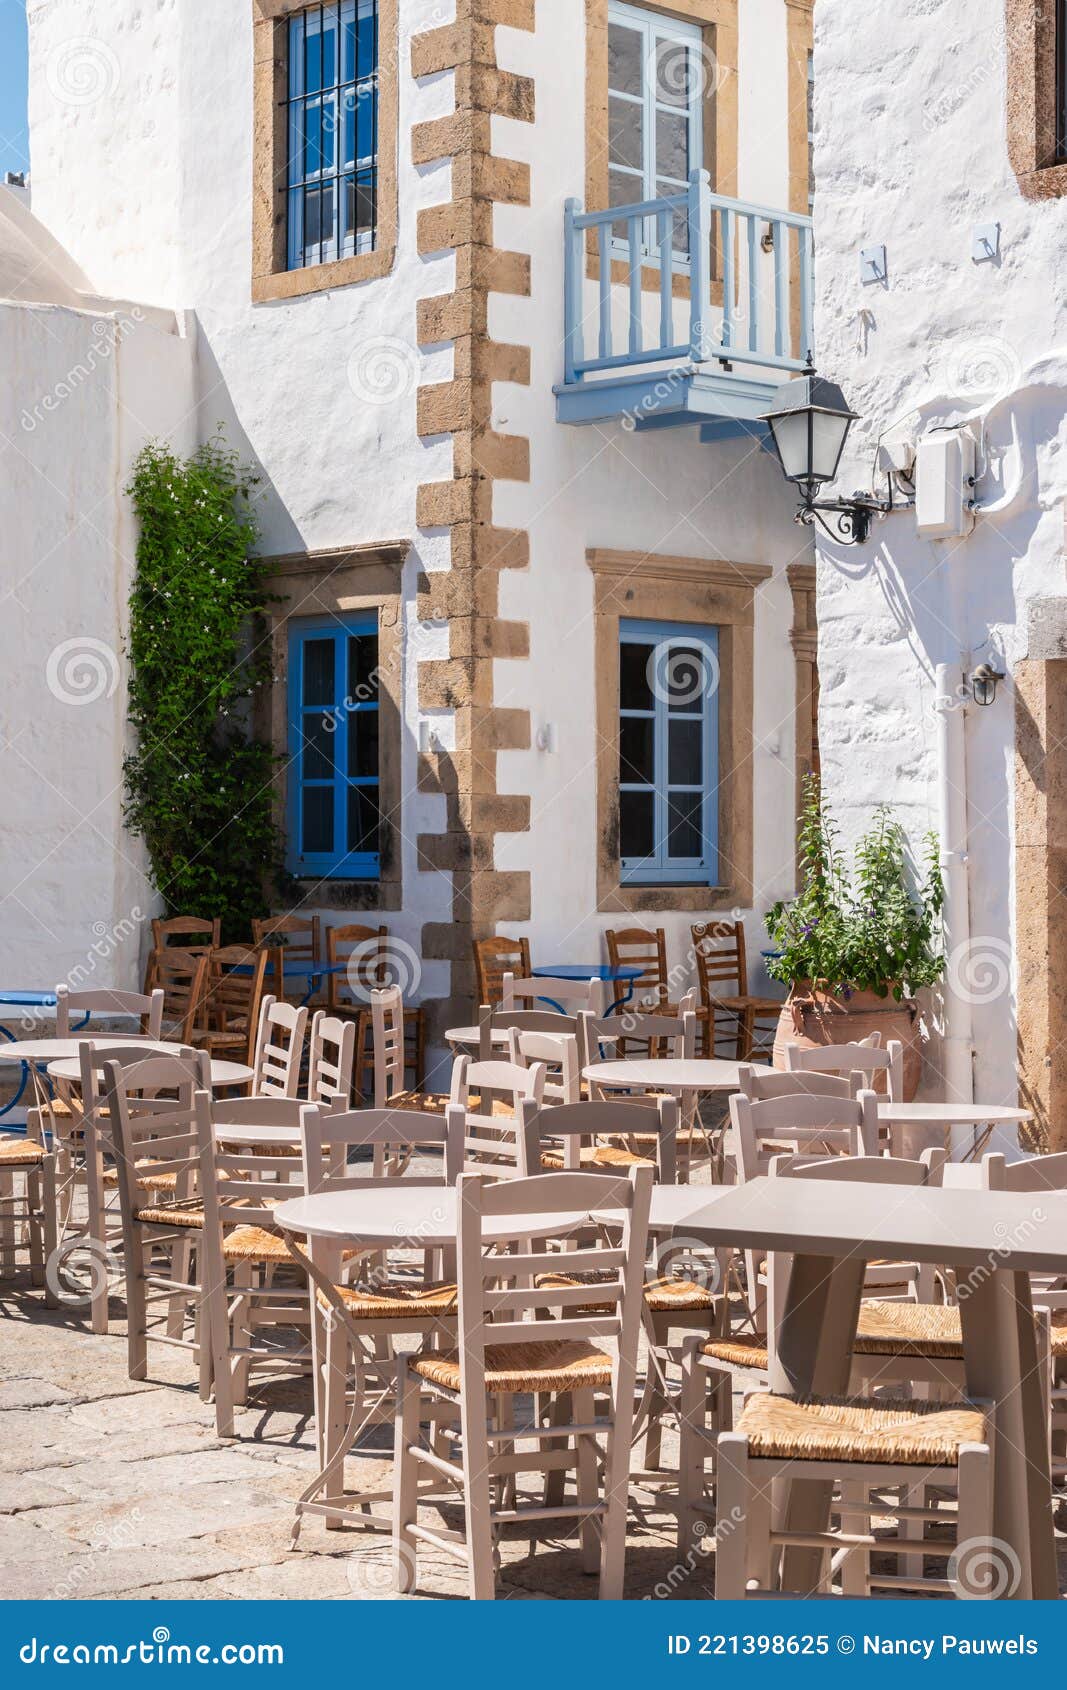 εξωτερικό έπιπλα καφετέρια στην παλιά ελληνική πόλη. Στοκ Εικόνα - εικόνα  από lifestyle: 221398625